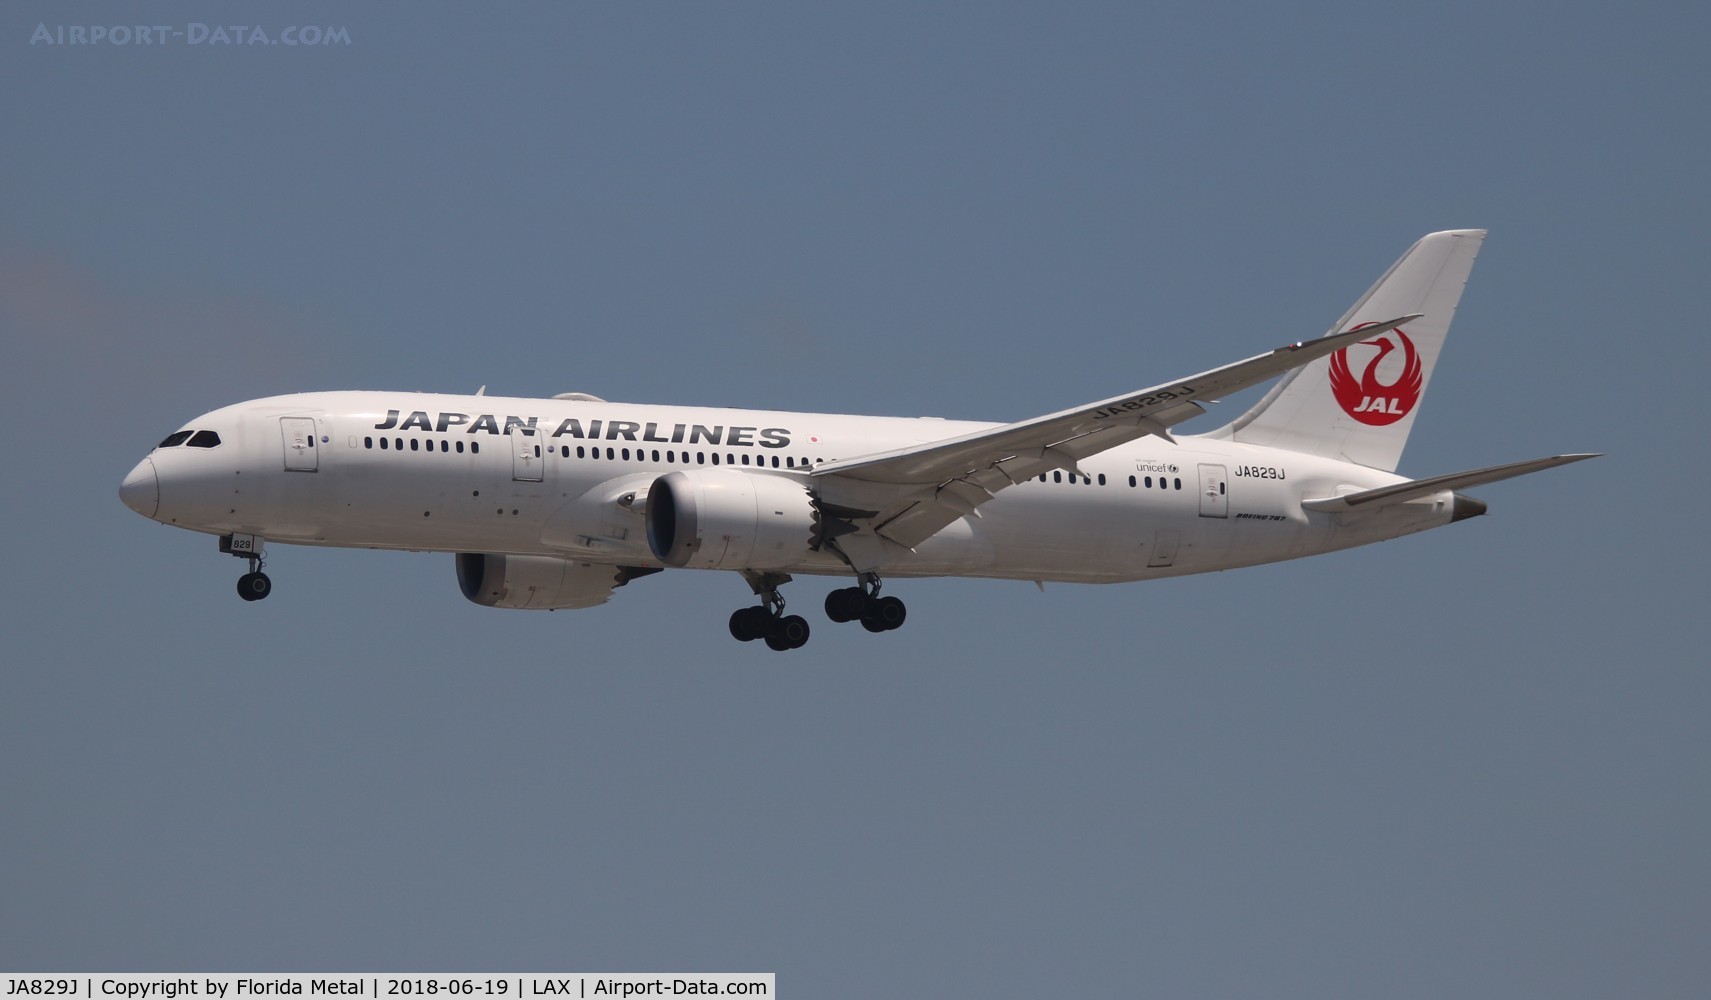 JA829J, 2012 Boeing 787-8 Dreamliner C/N 34839, Japan Airlines